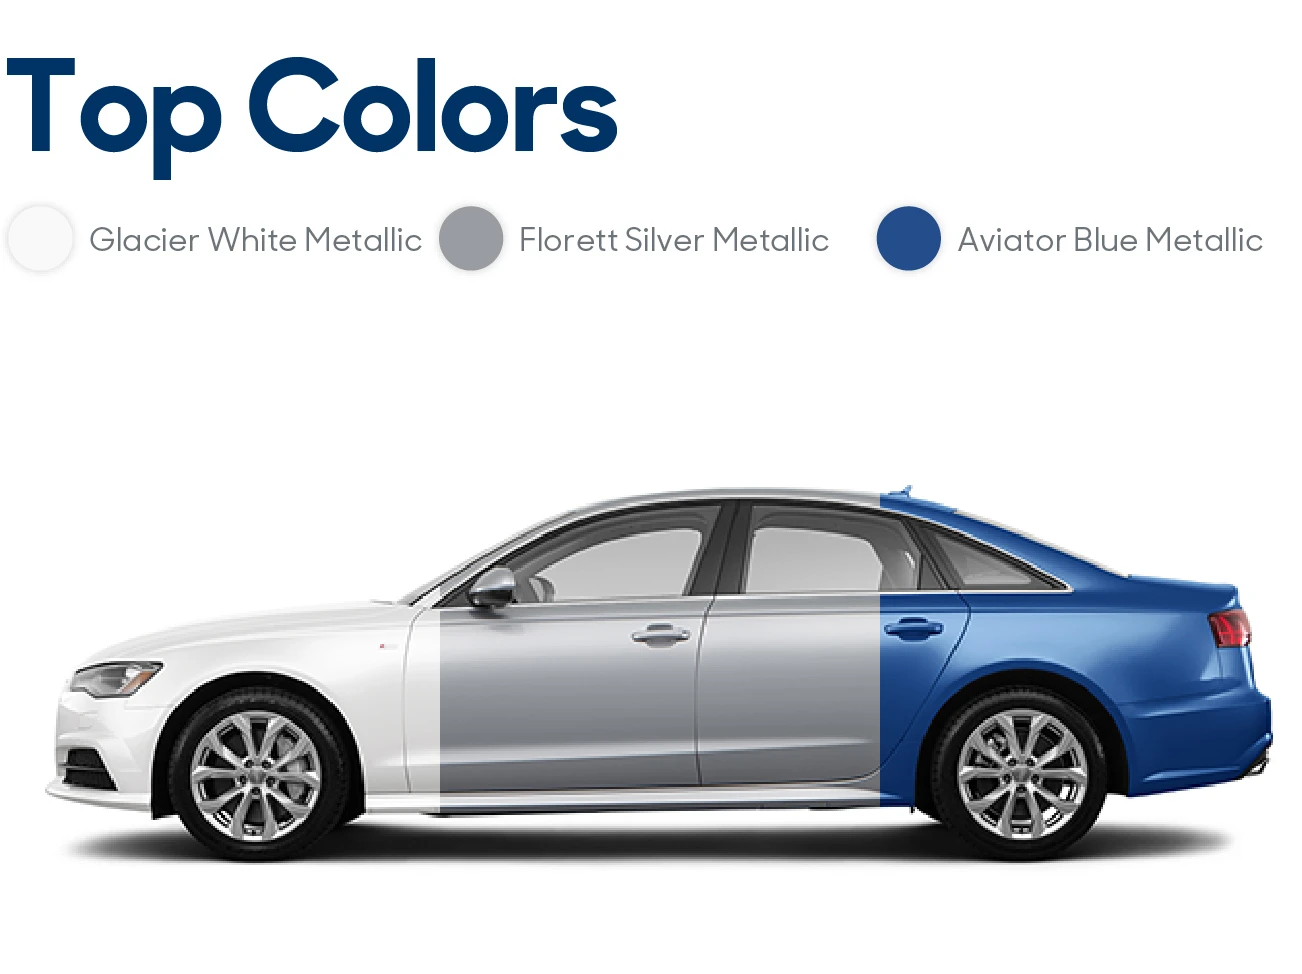 2016 Audi A6 Review: Top Colors| CarMax